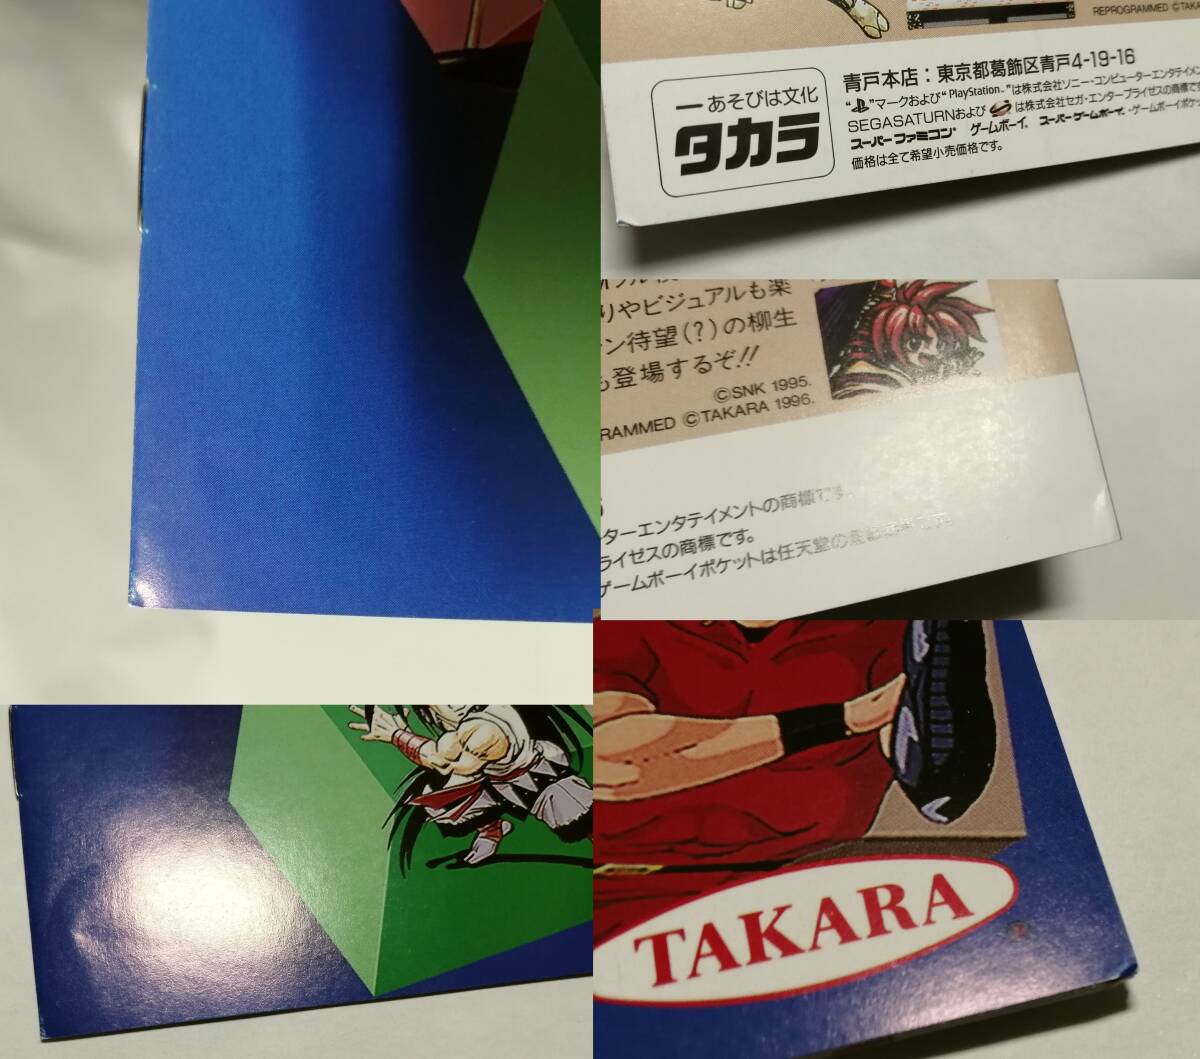 「TAKARA SUMMER～FALL タカラTVゲームソフトラインナップ」パンフレット (DEEP SEA ADVENTURE,にとうしんでん,聖痕のジョカ,コブラ他)_所々に折れがあります。